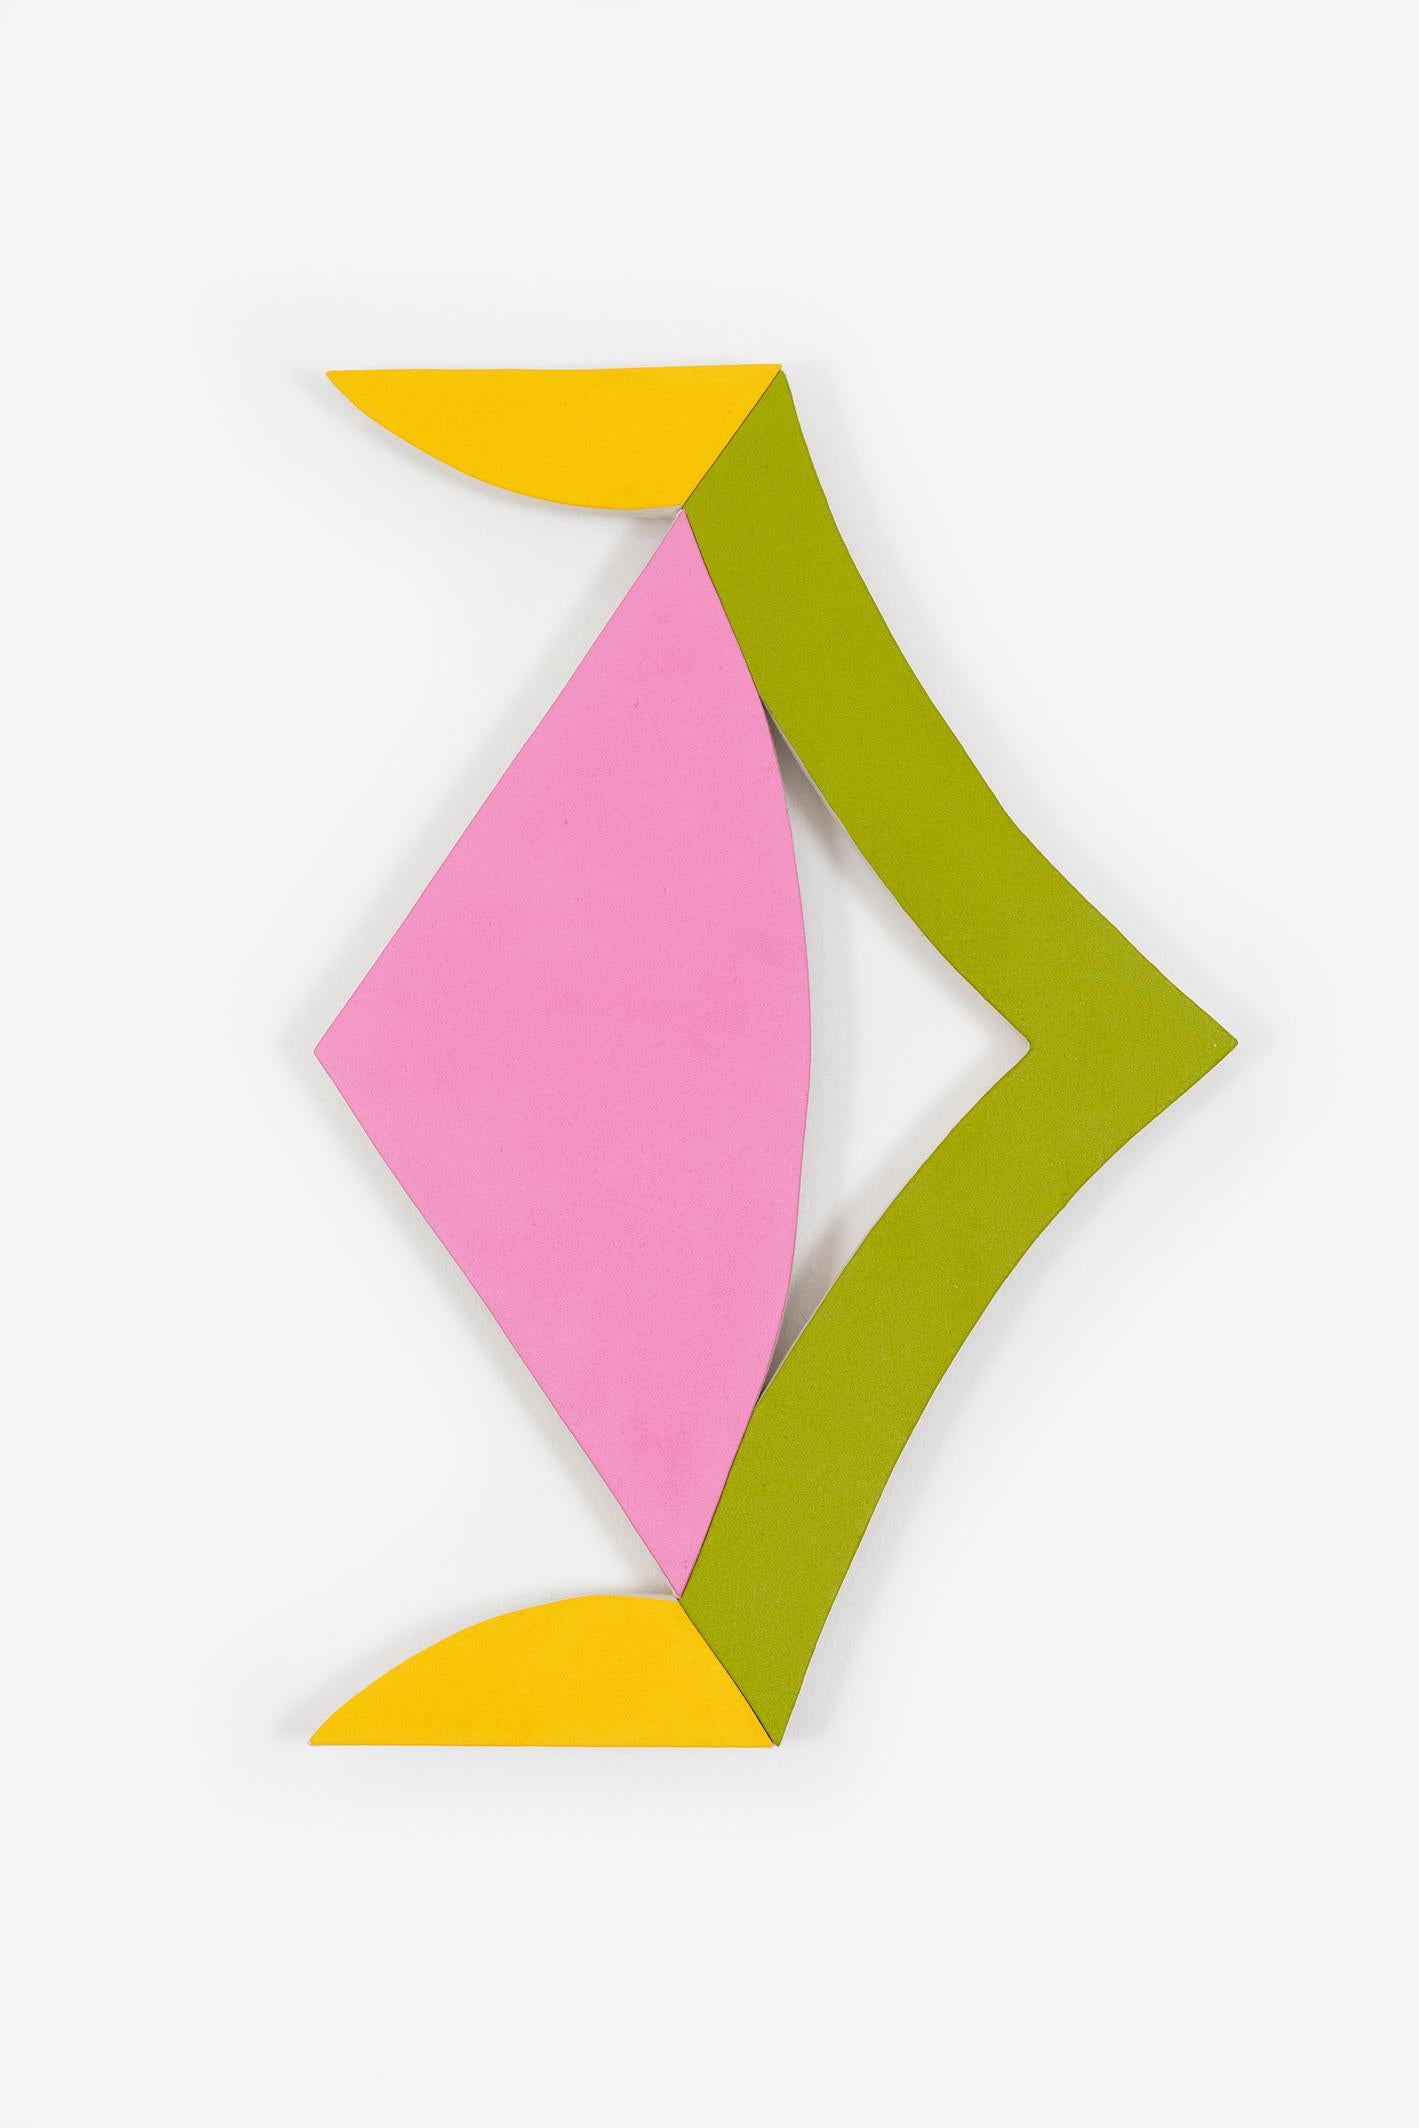 Jason Matherly Abstract Sculpture – „21-5“ Wandskulptur-gelb, rosa, grün, geometrisch, Mitte des Jahrhunderts, mcm, klein